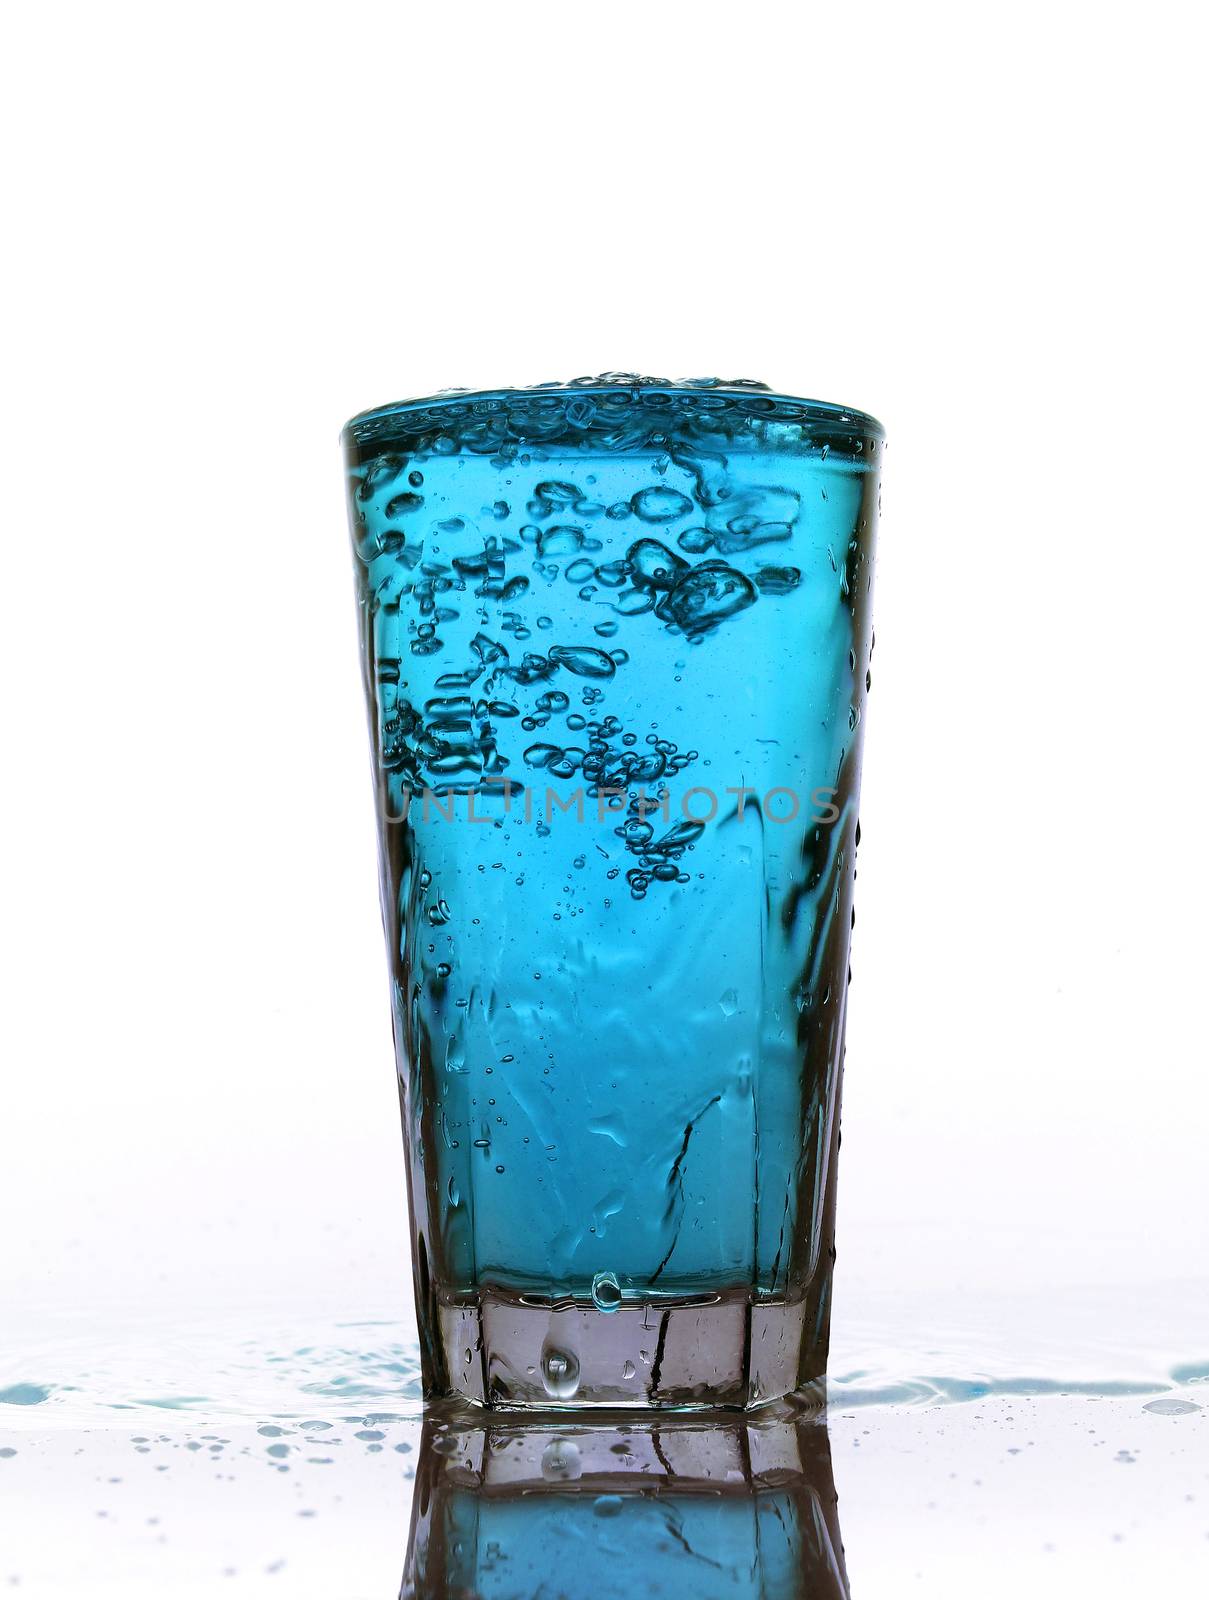 Glass of splashing TBlue lemonade isolated on white background by gemenacom